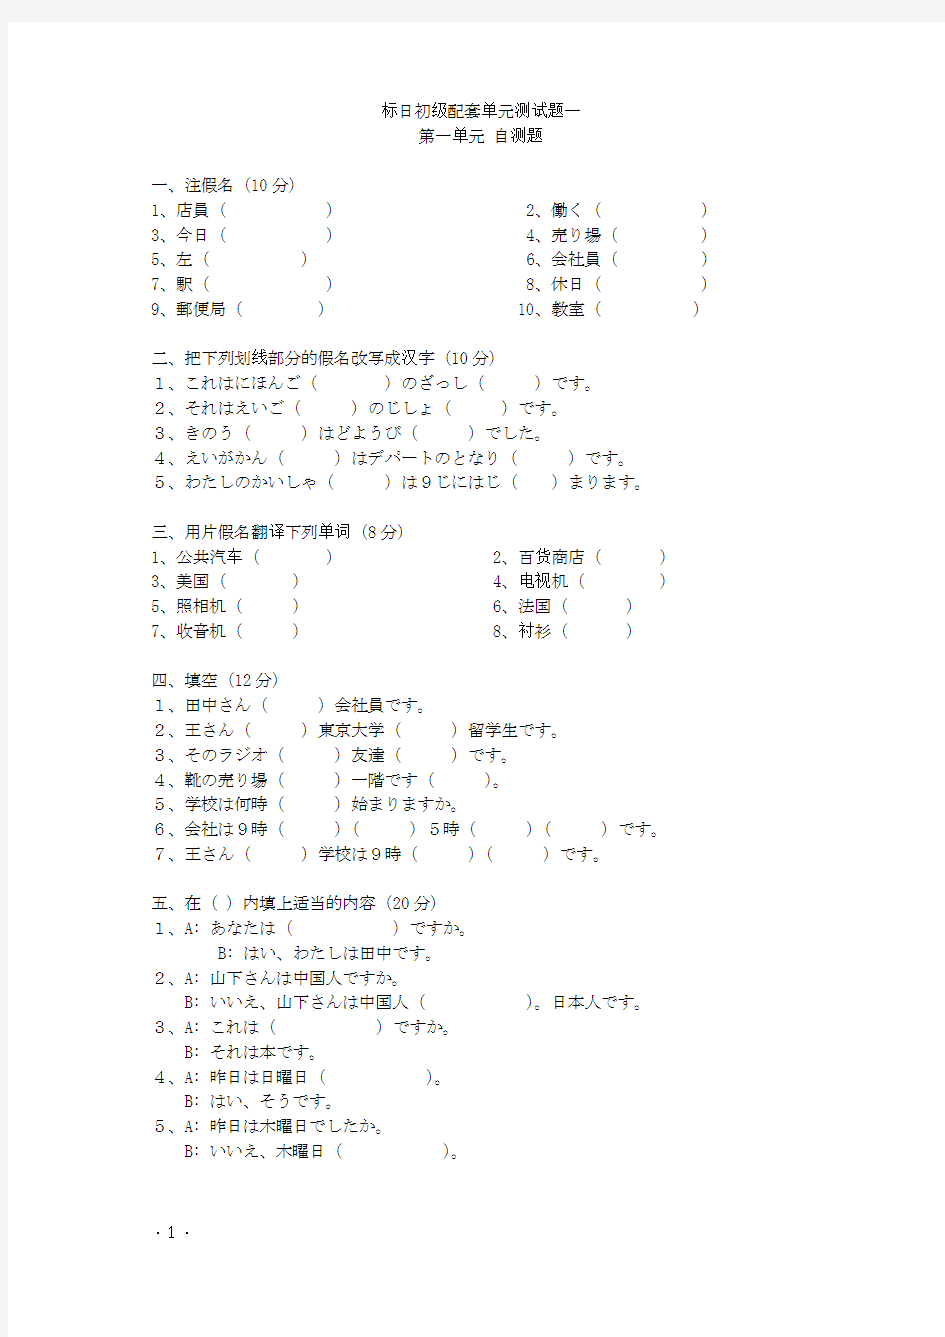 标准日语初级配套单元测试题